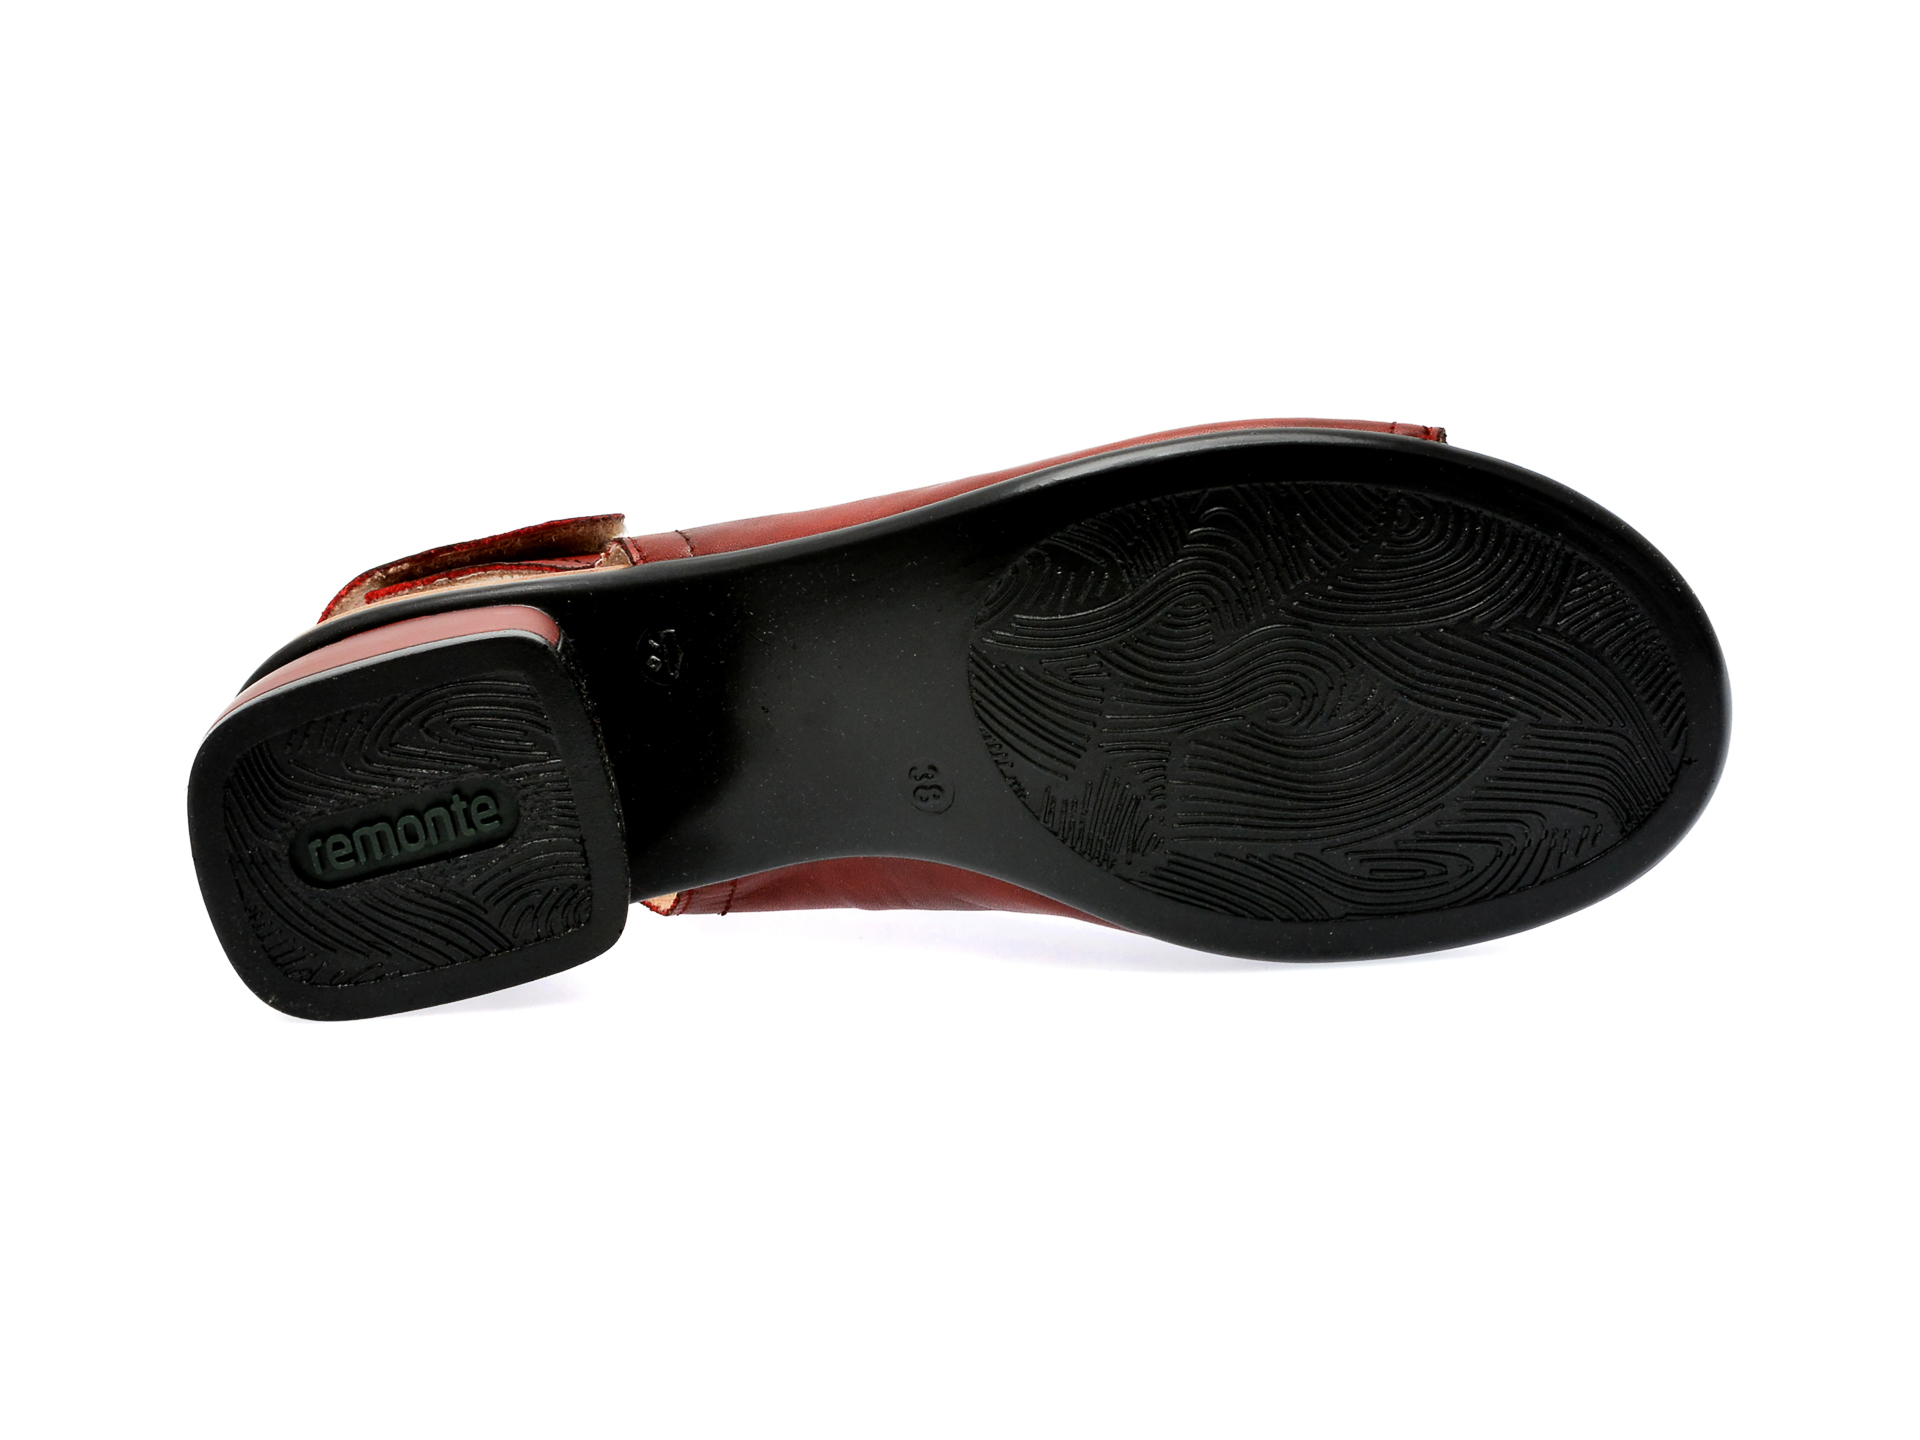 Sandale REMONTE visinii, R8770, din piele naturala /femei/sandale imagine noua